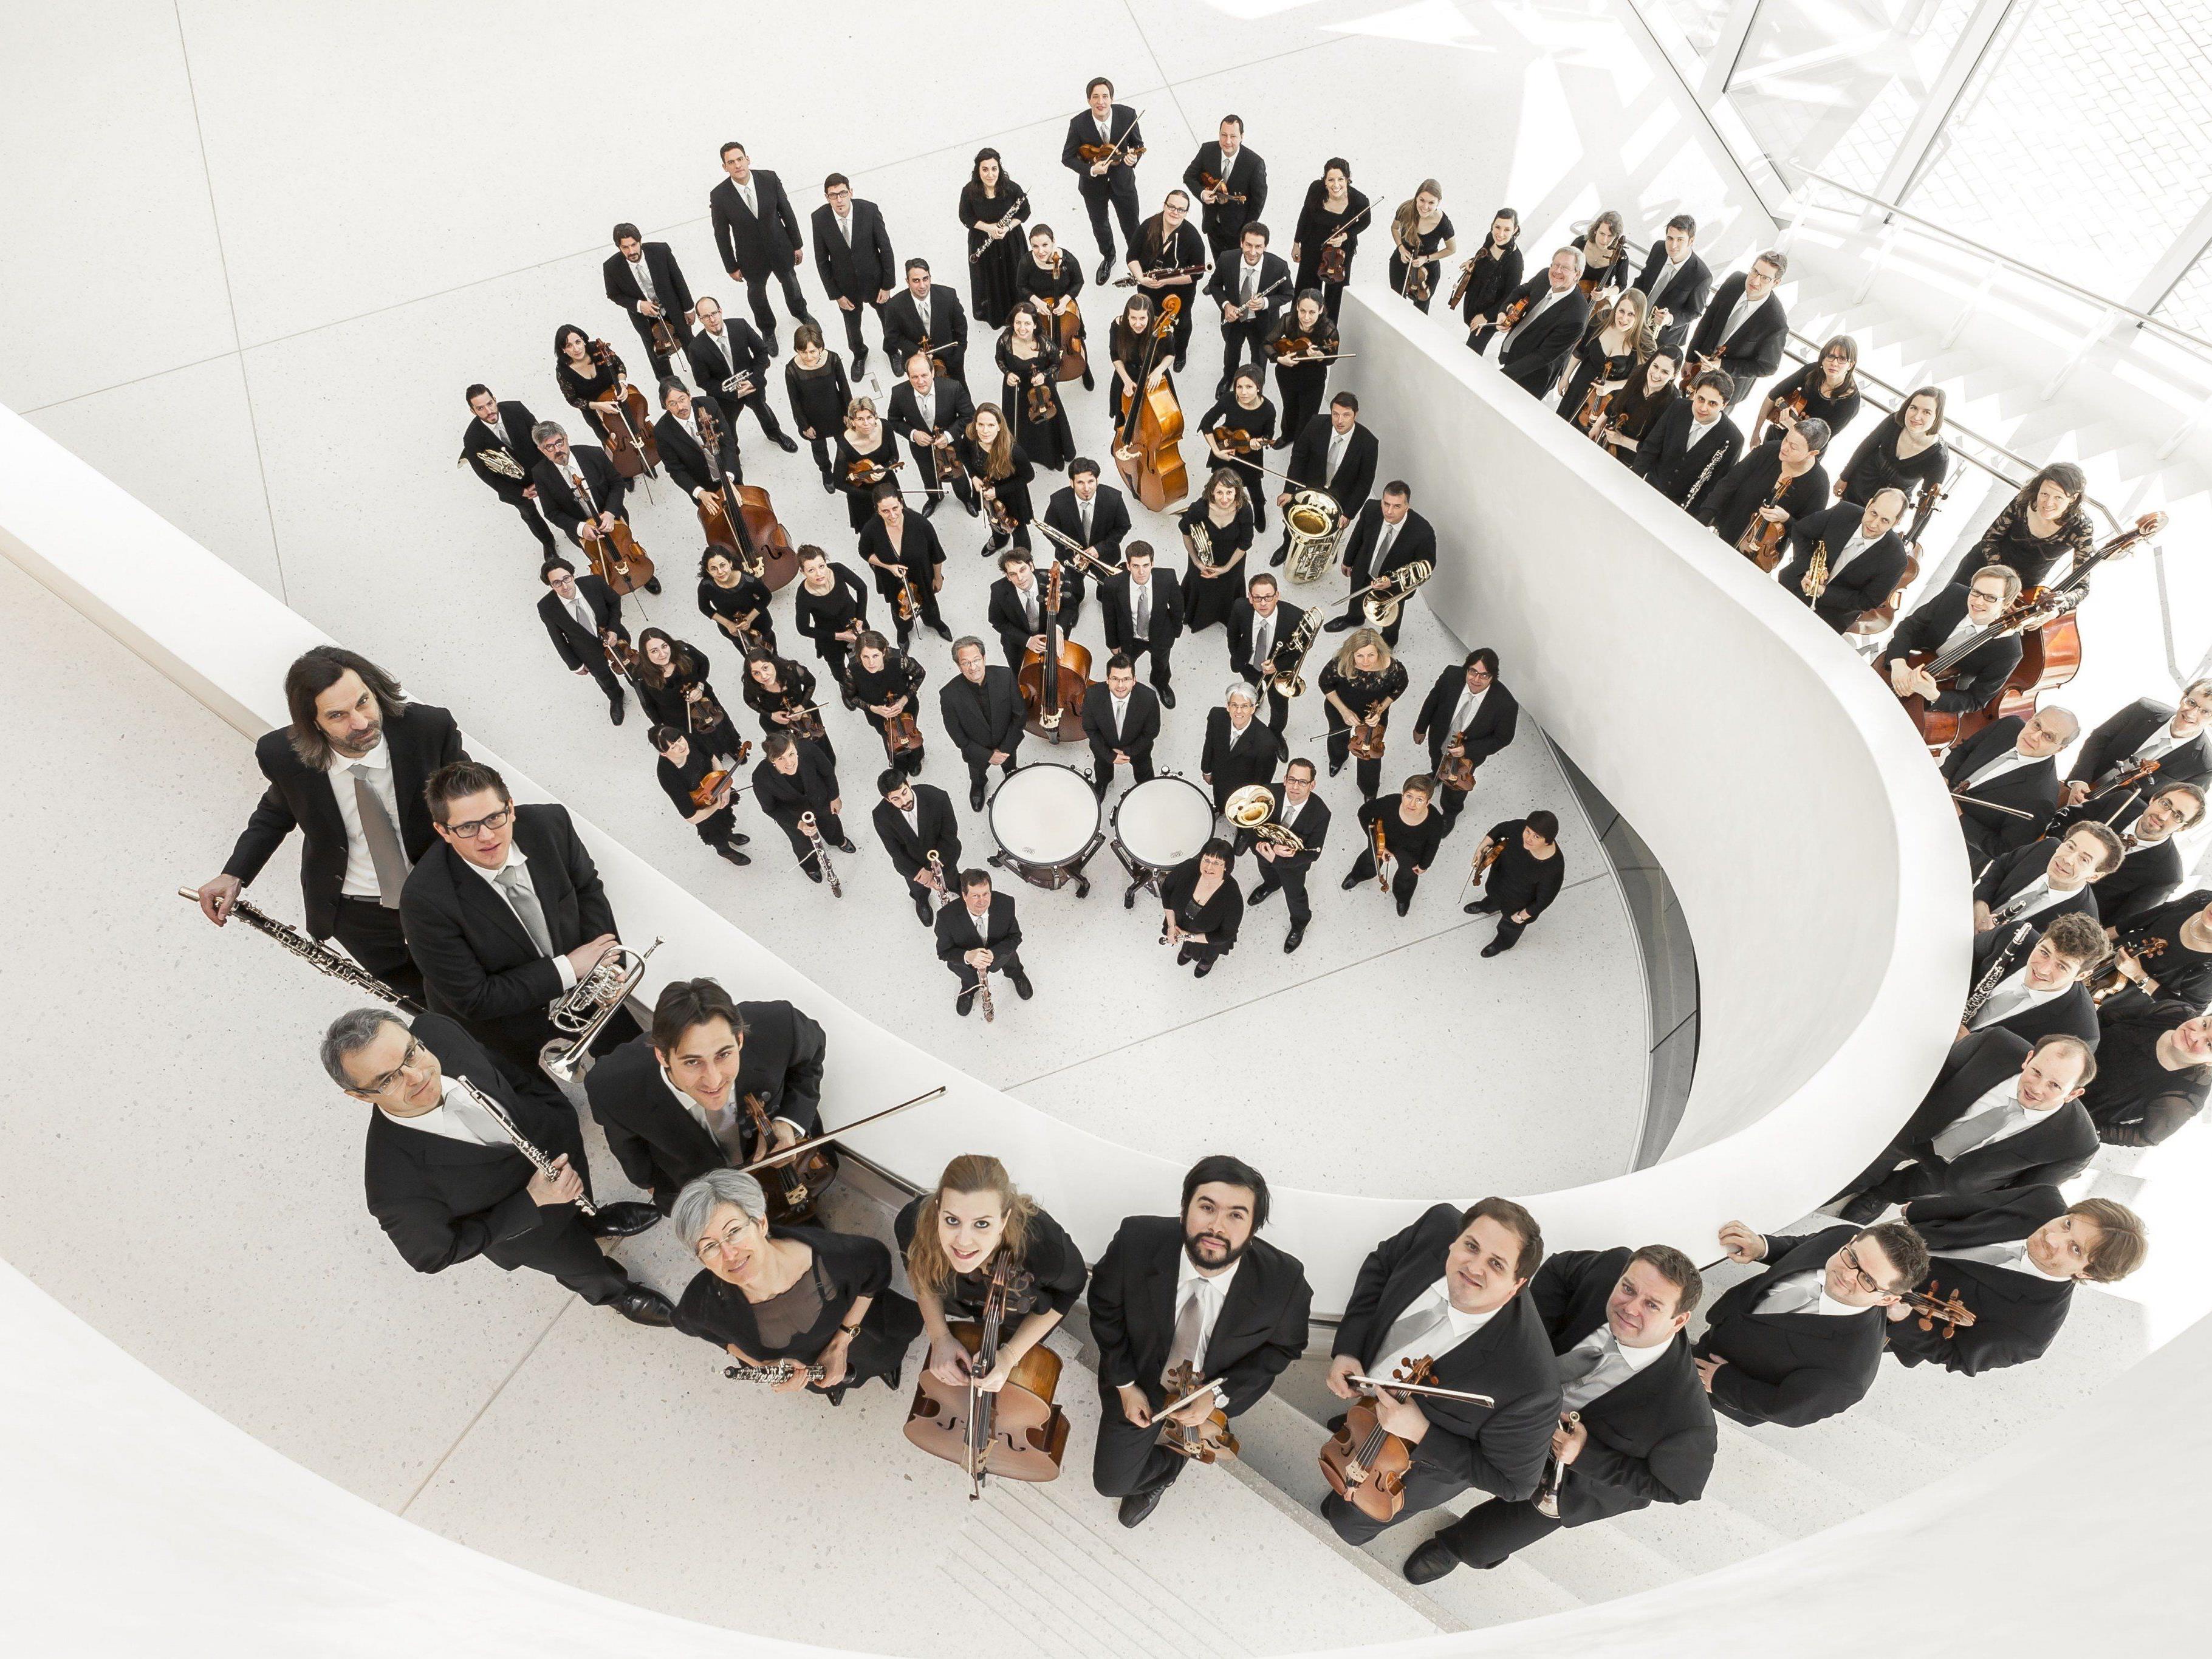 Das Symphonieorchester Vorarlberg spielt am 16. Jänner in Feldkirch und am 17. Jänner in Bregenz Werke von Brahms, Hummel und Bizet.